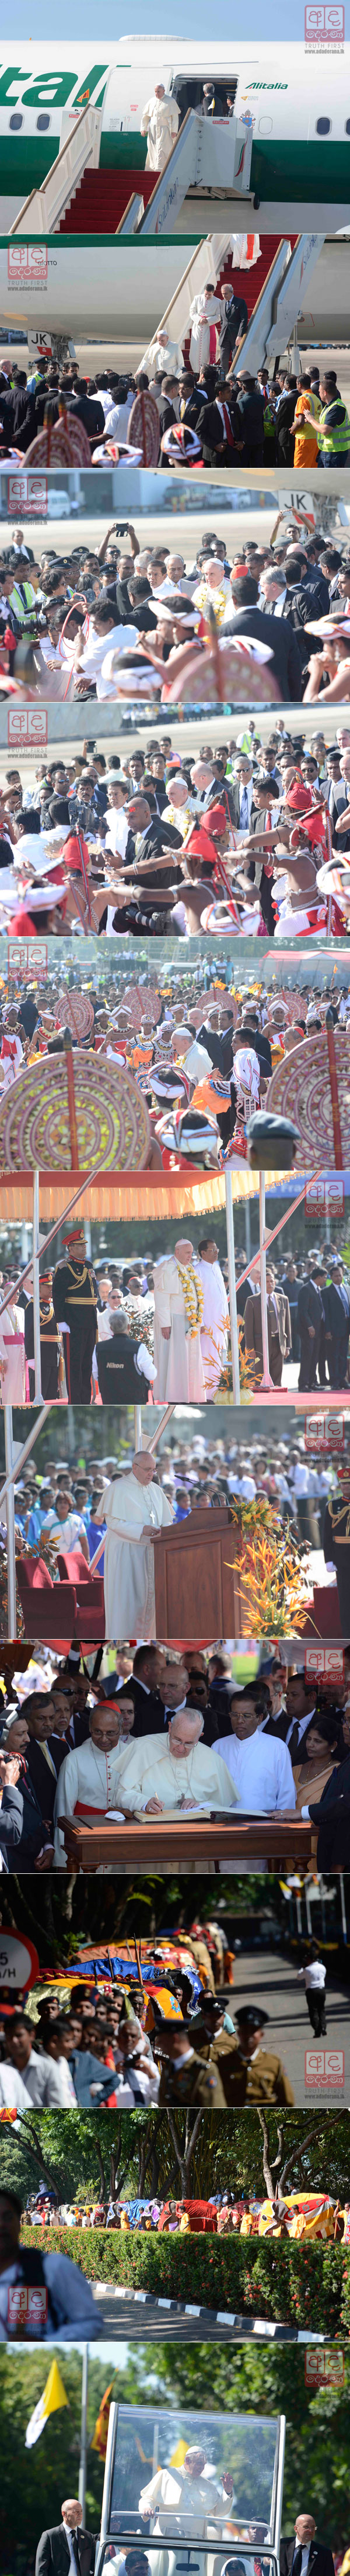 Pope Francis in Sri Lanka...